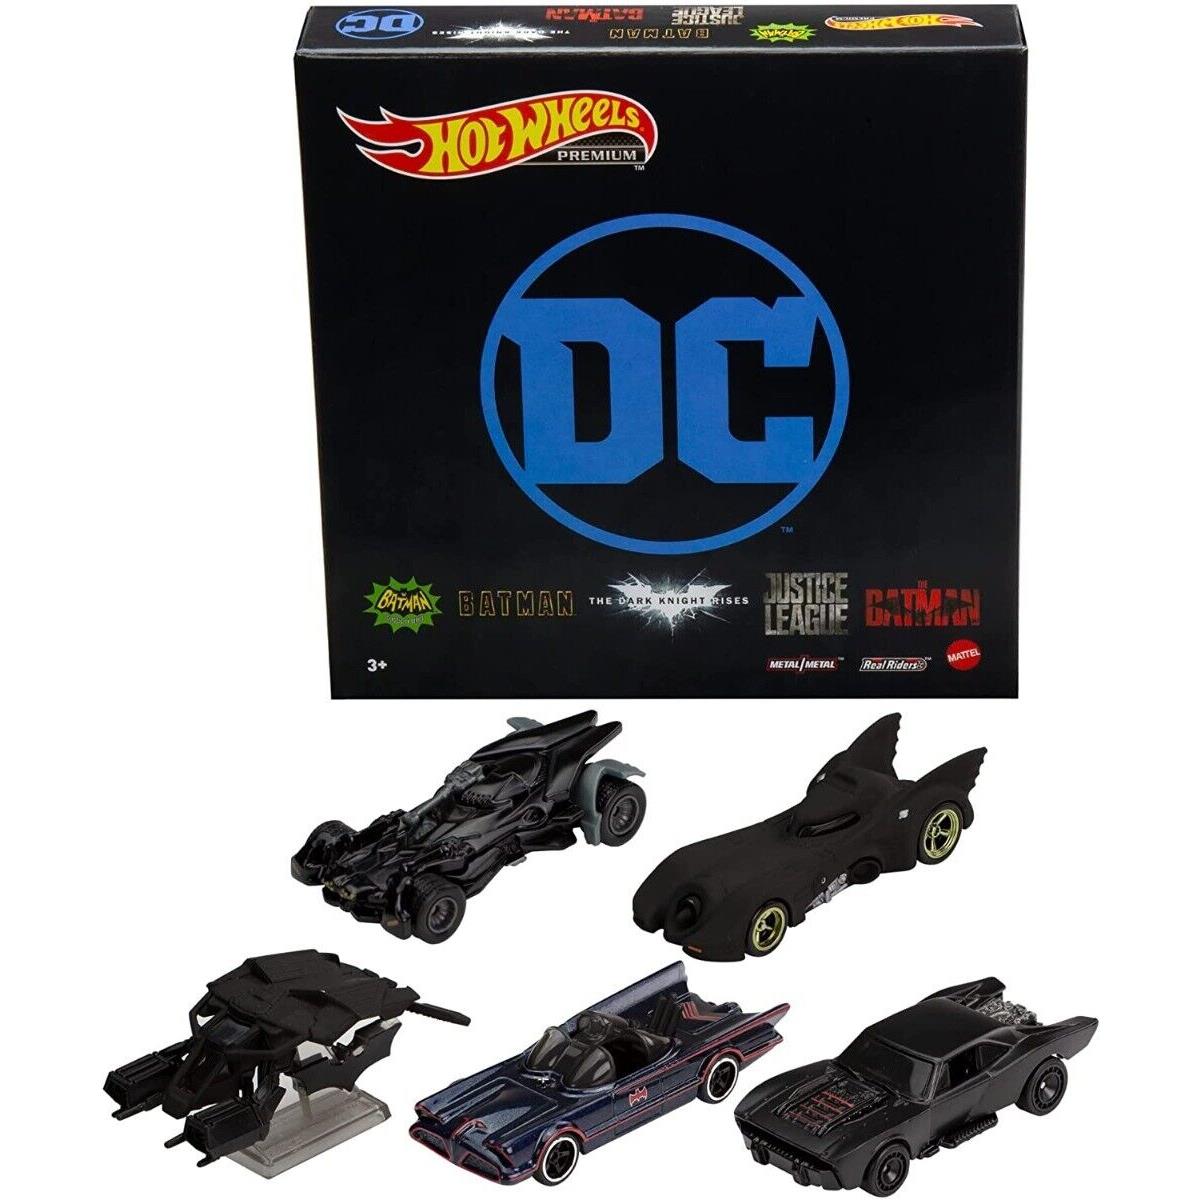 2022 Hot Wheels Premium Batman Bundle 5-Pack Fan-favorite Batmobile Castings